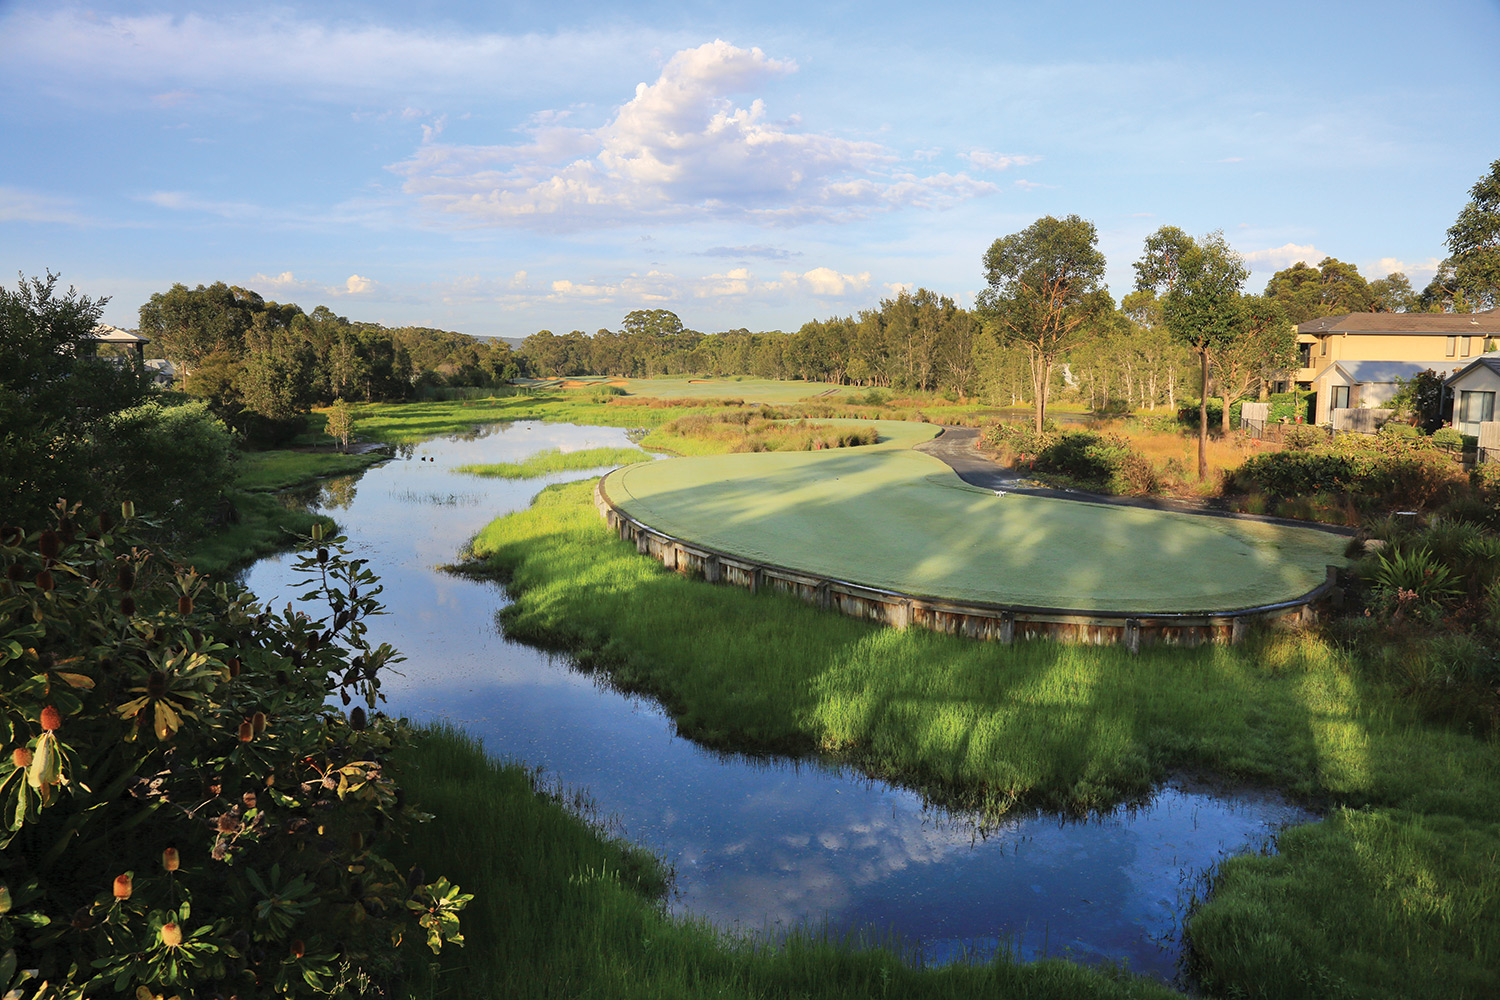 Kooindah Waters Golf Club